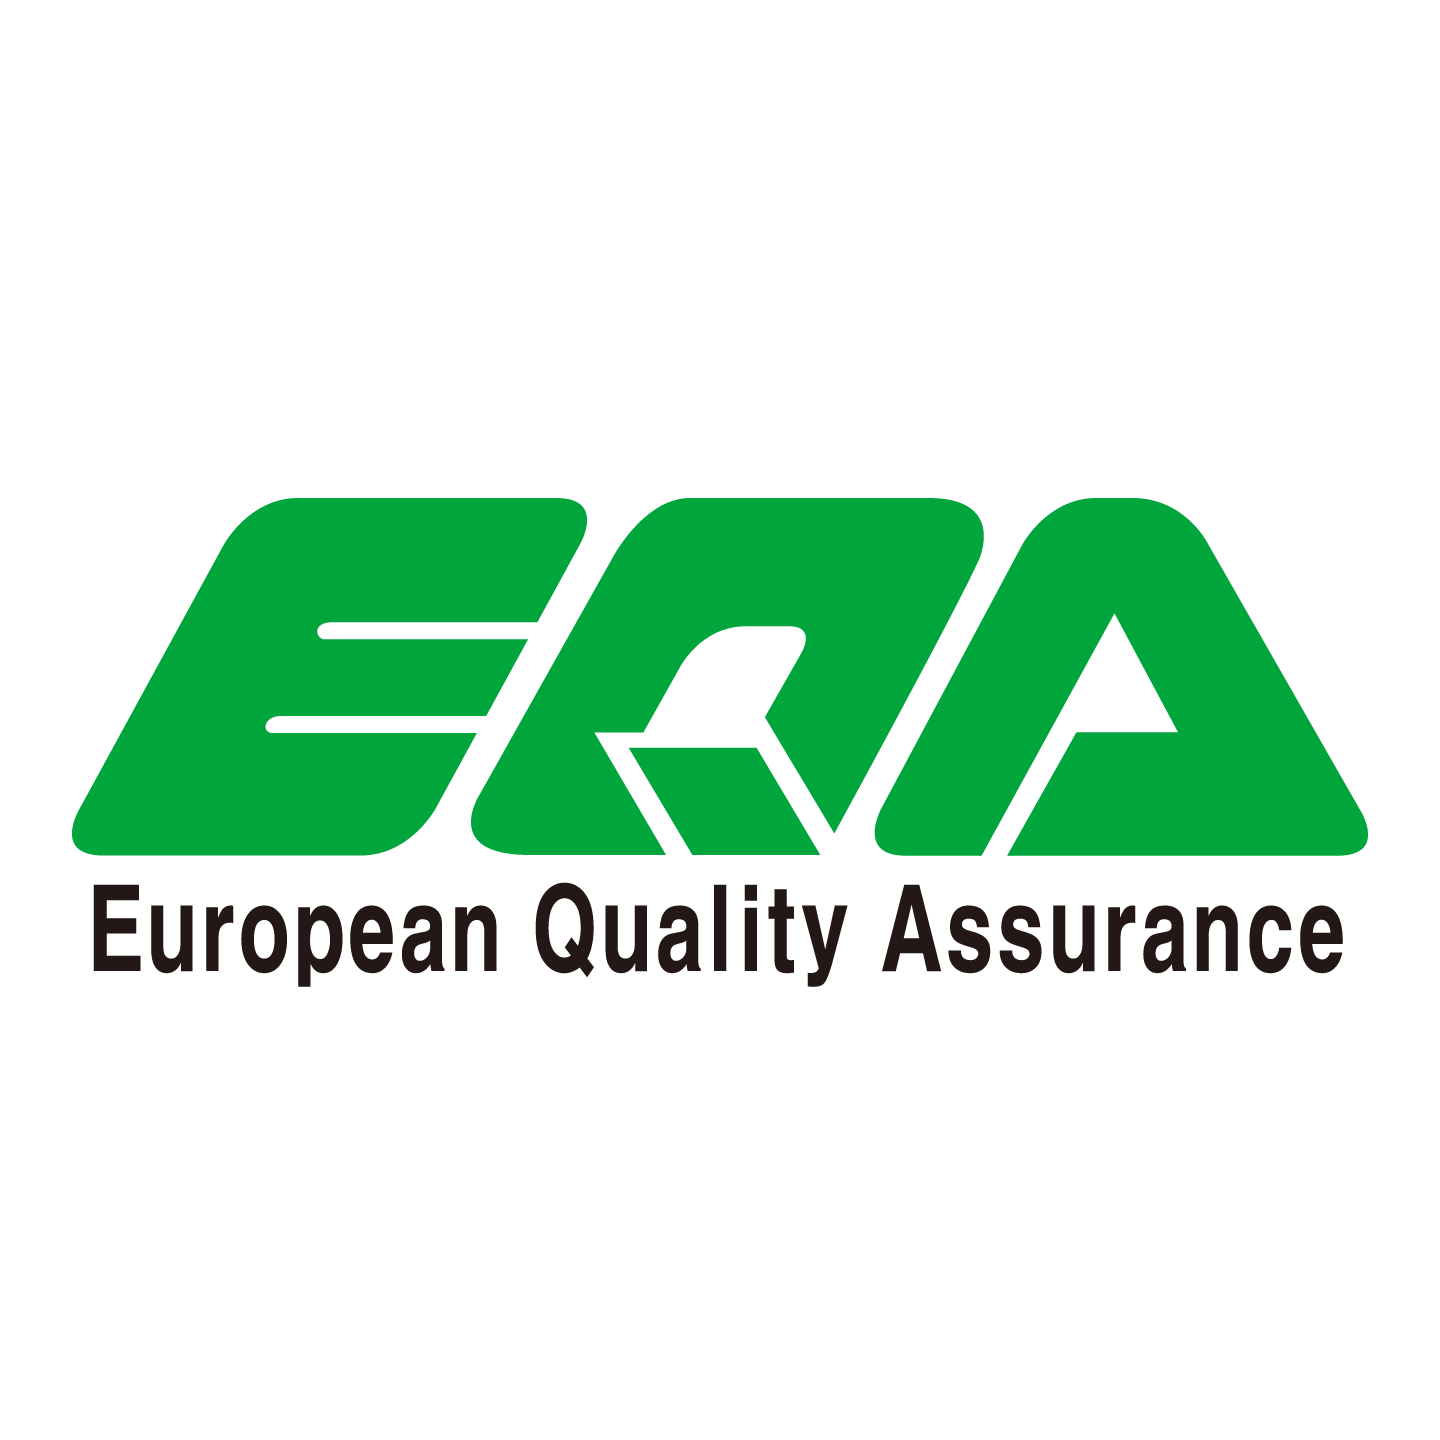 European Quality Assurance